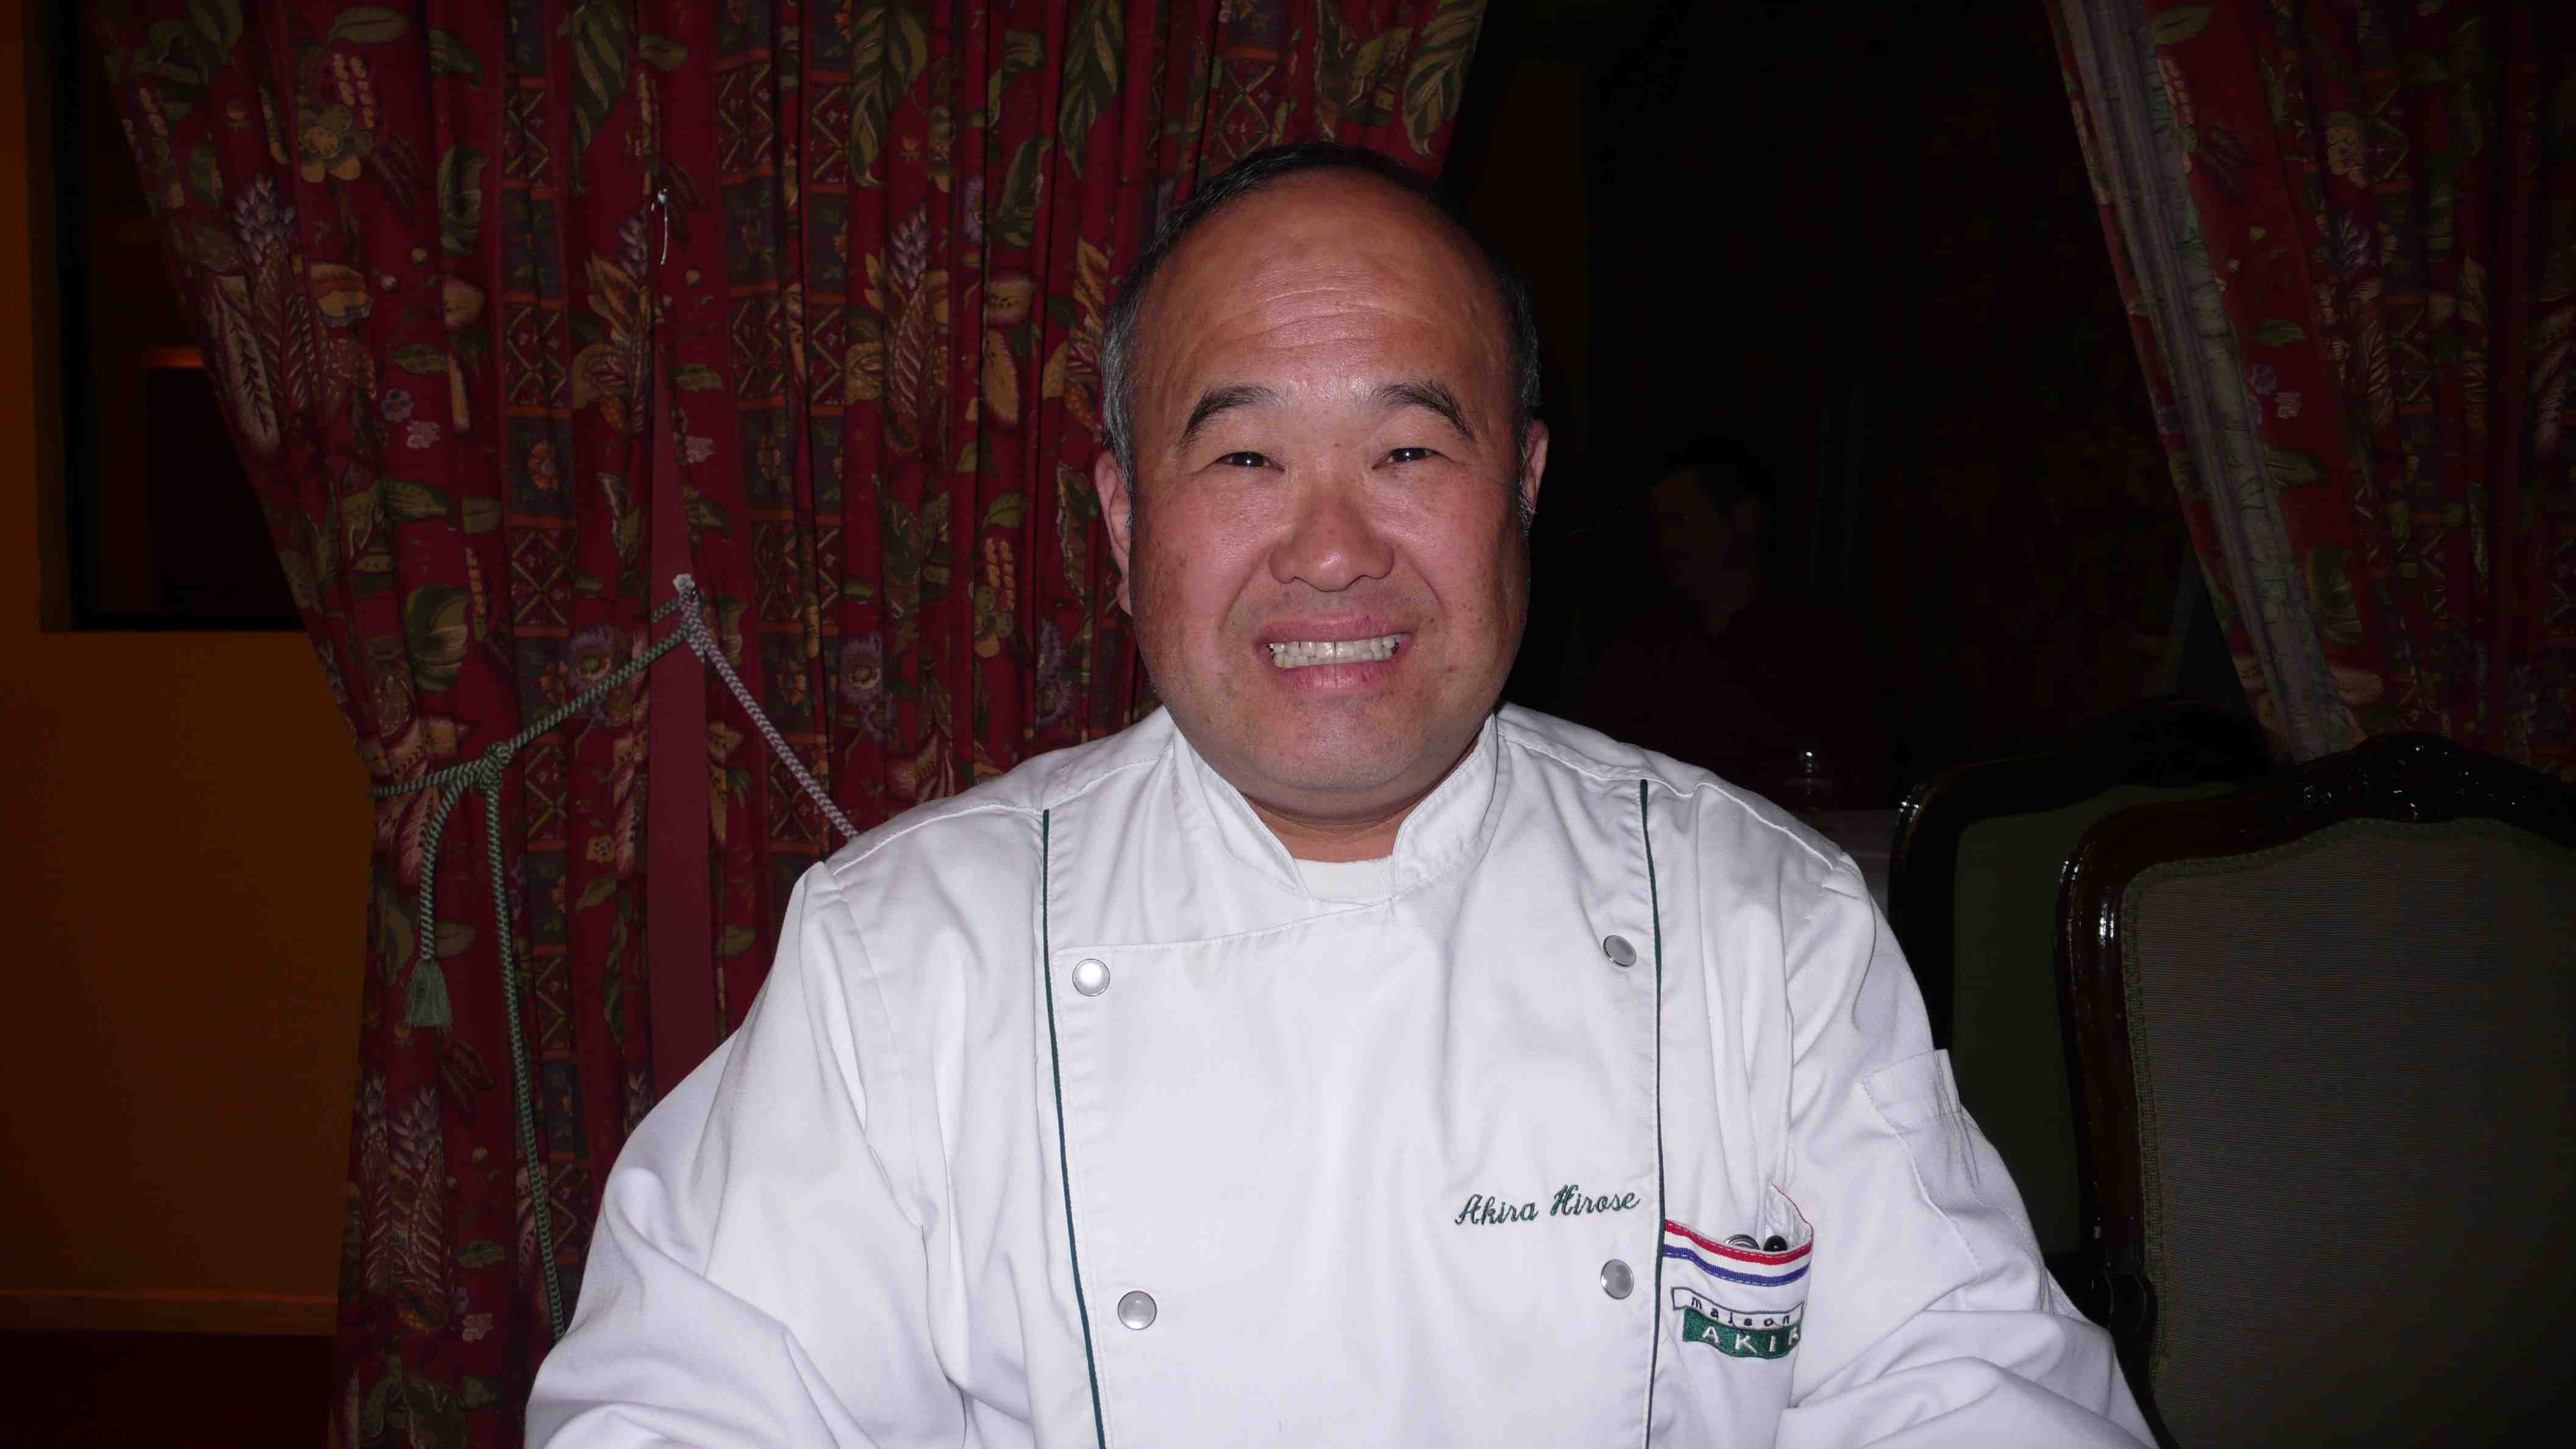 Chef Akira Hirose